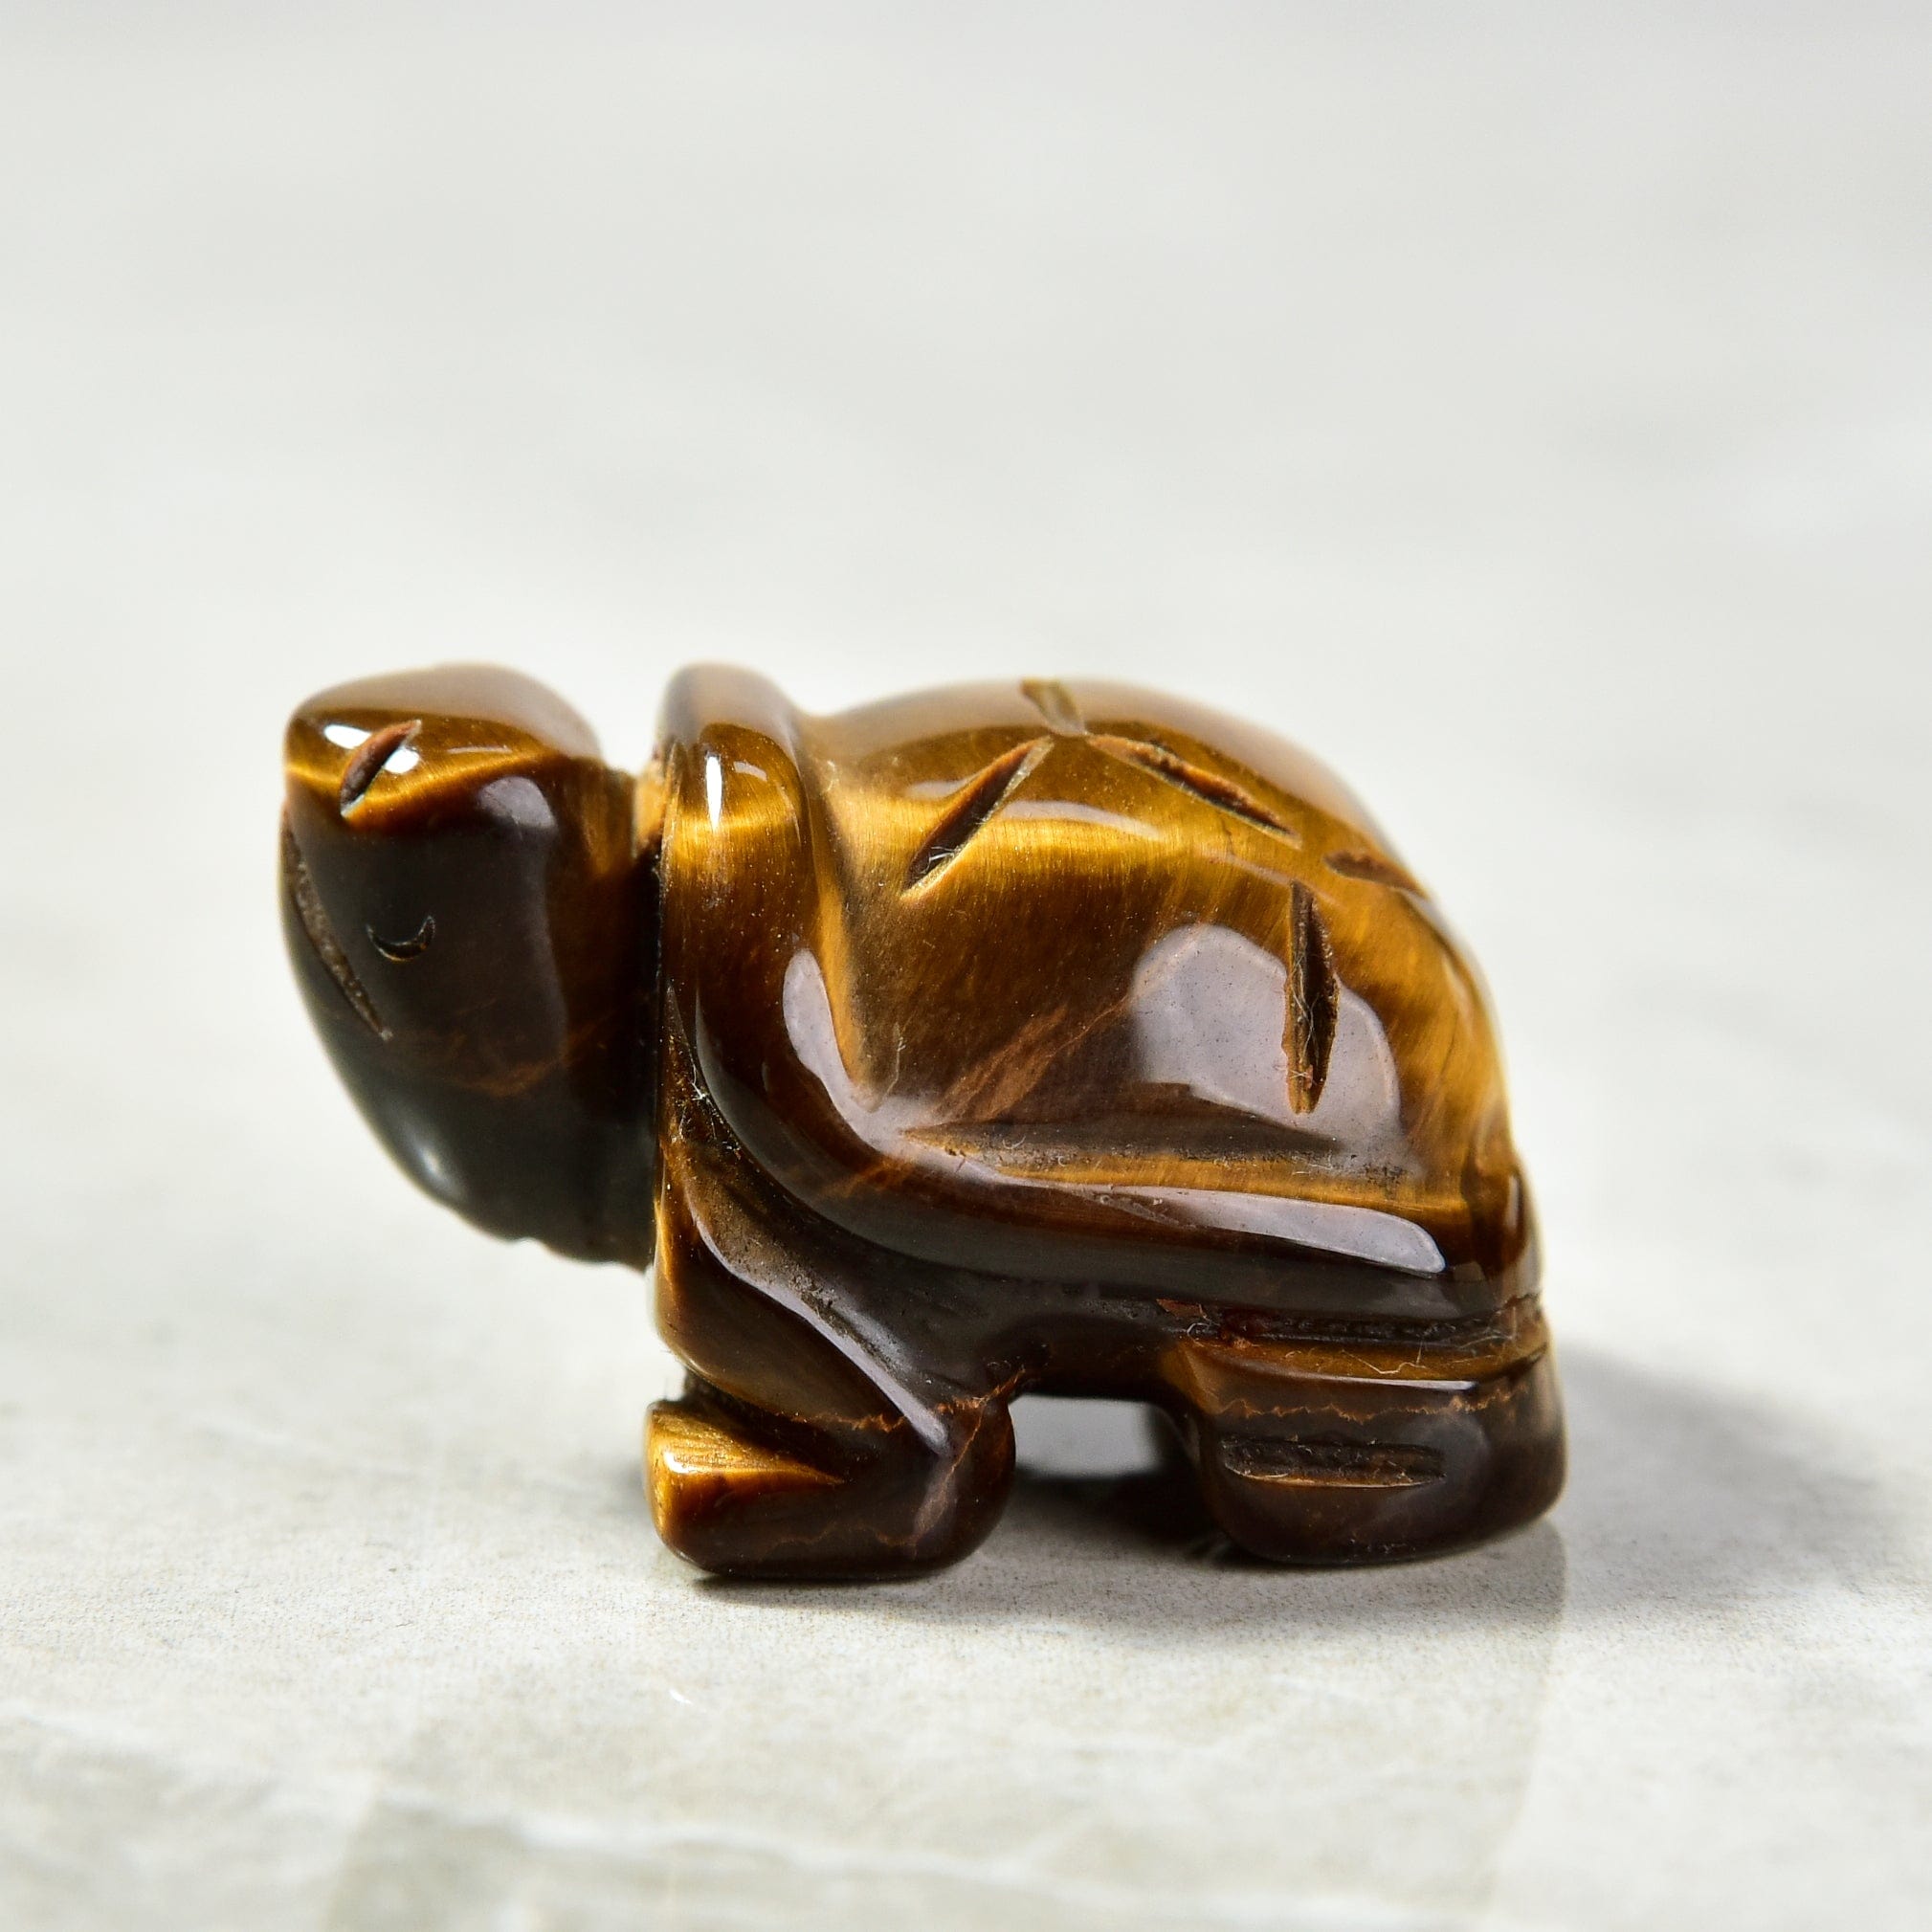 Kalifano Gemstone Carvings Tiger Eye Turtle 1.5" Gemstone Carving CV13-T-TE